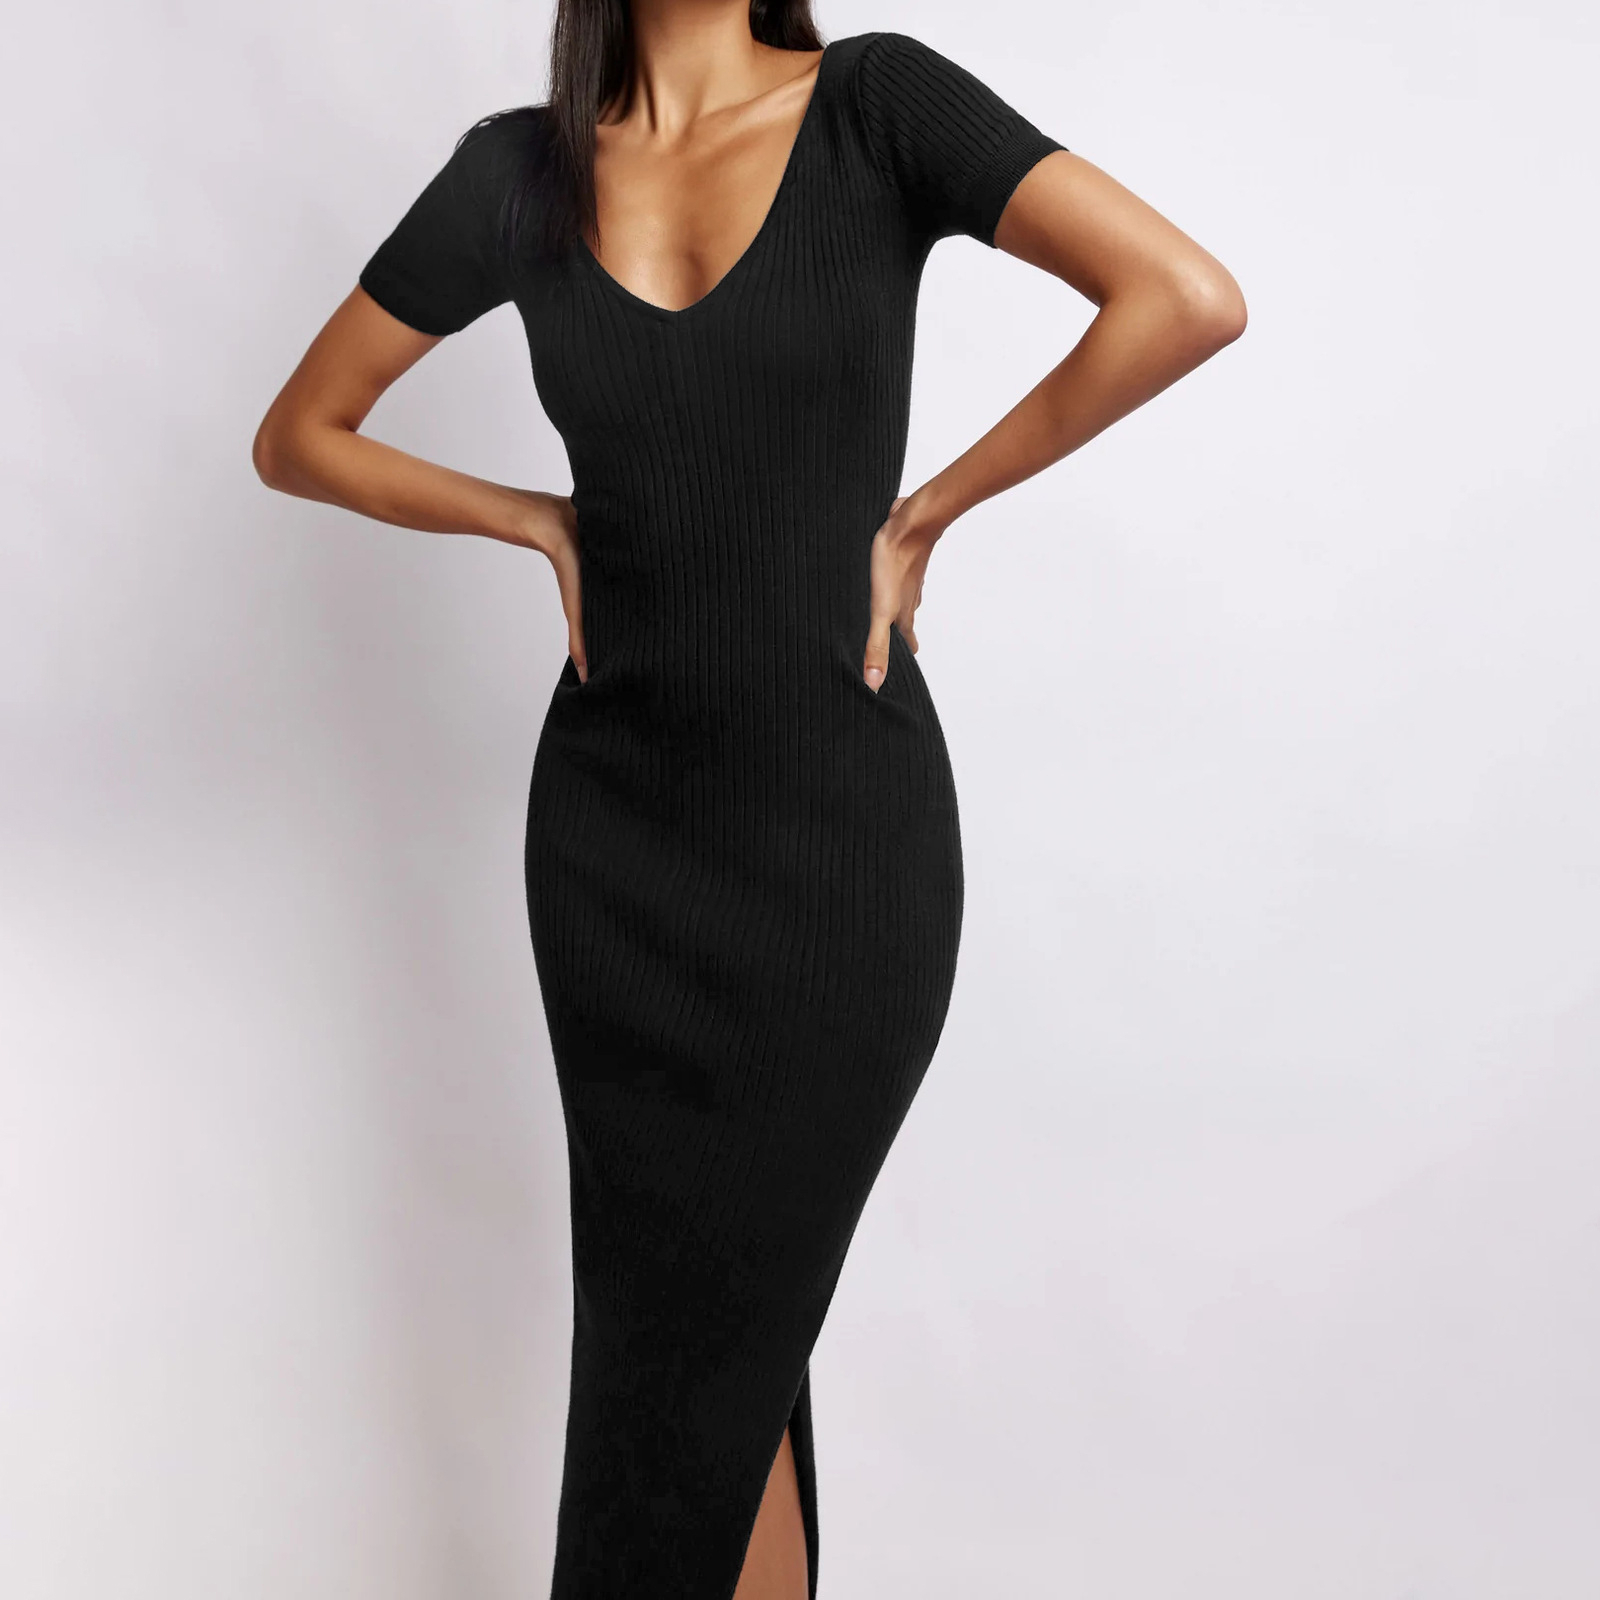 Sexy Women's V-neck Tight-fitting Split Skirt - Black, Large